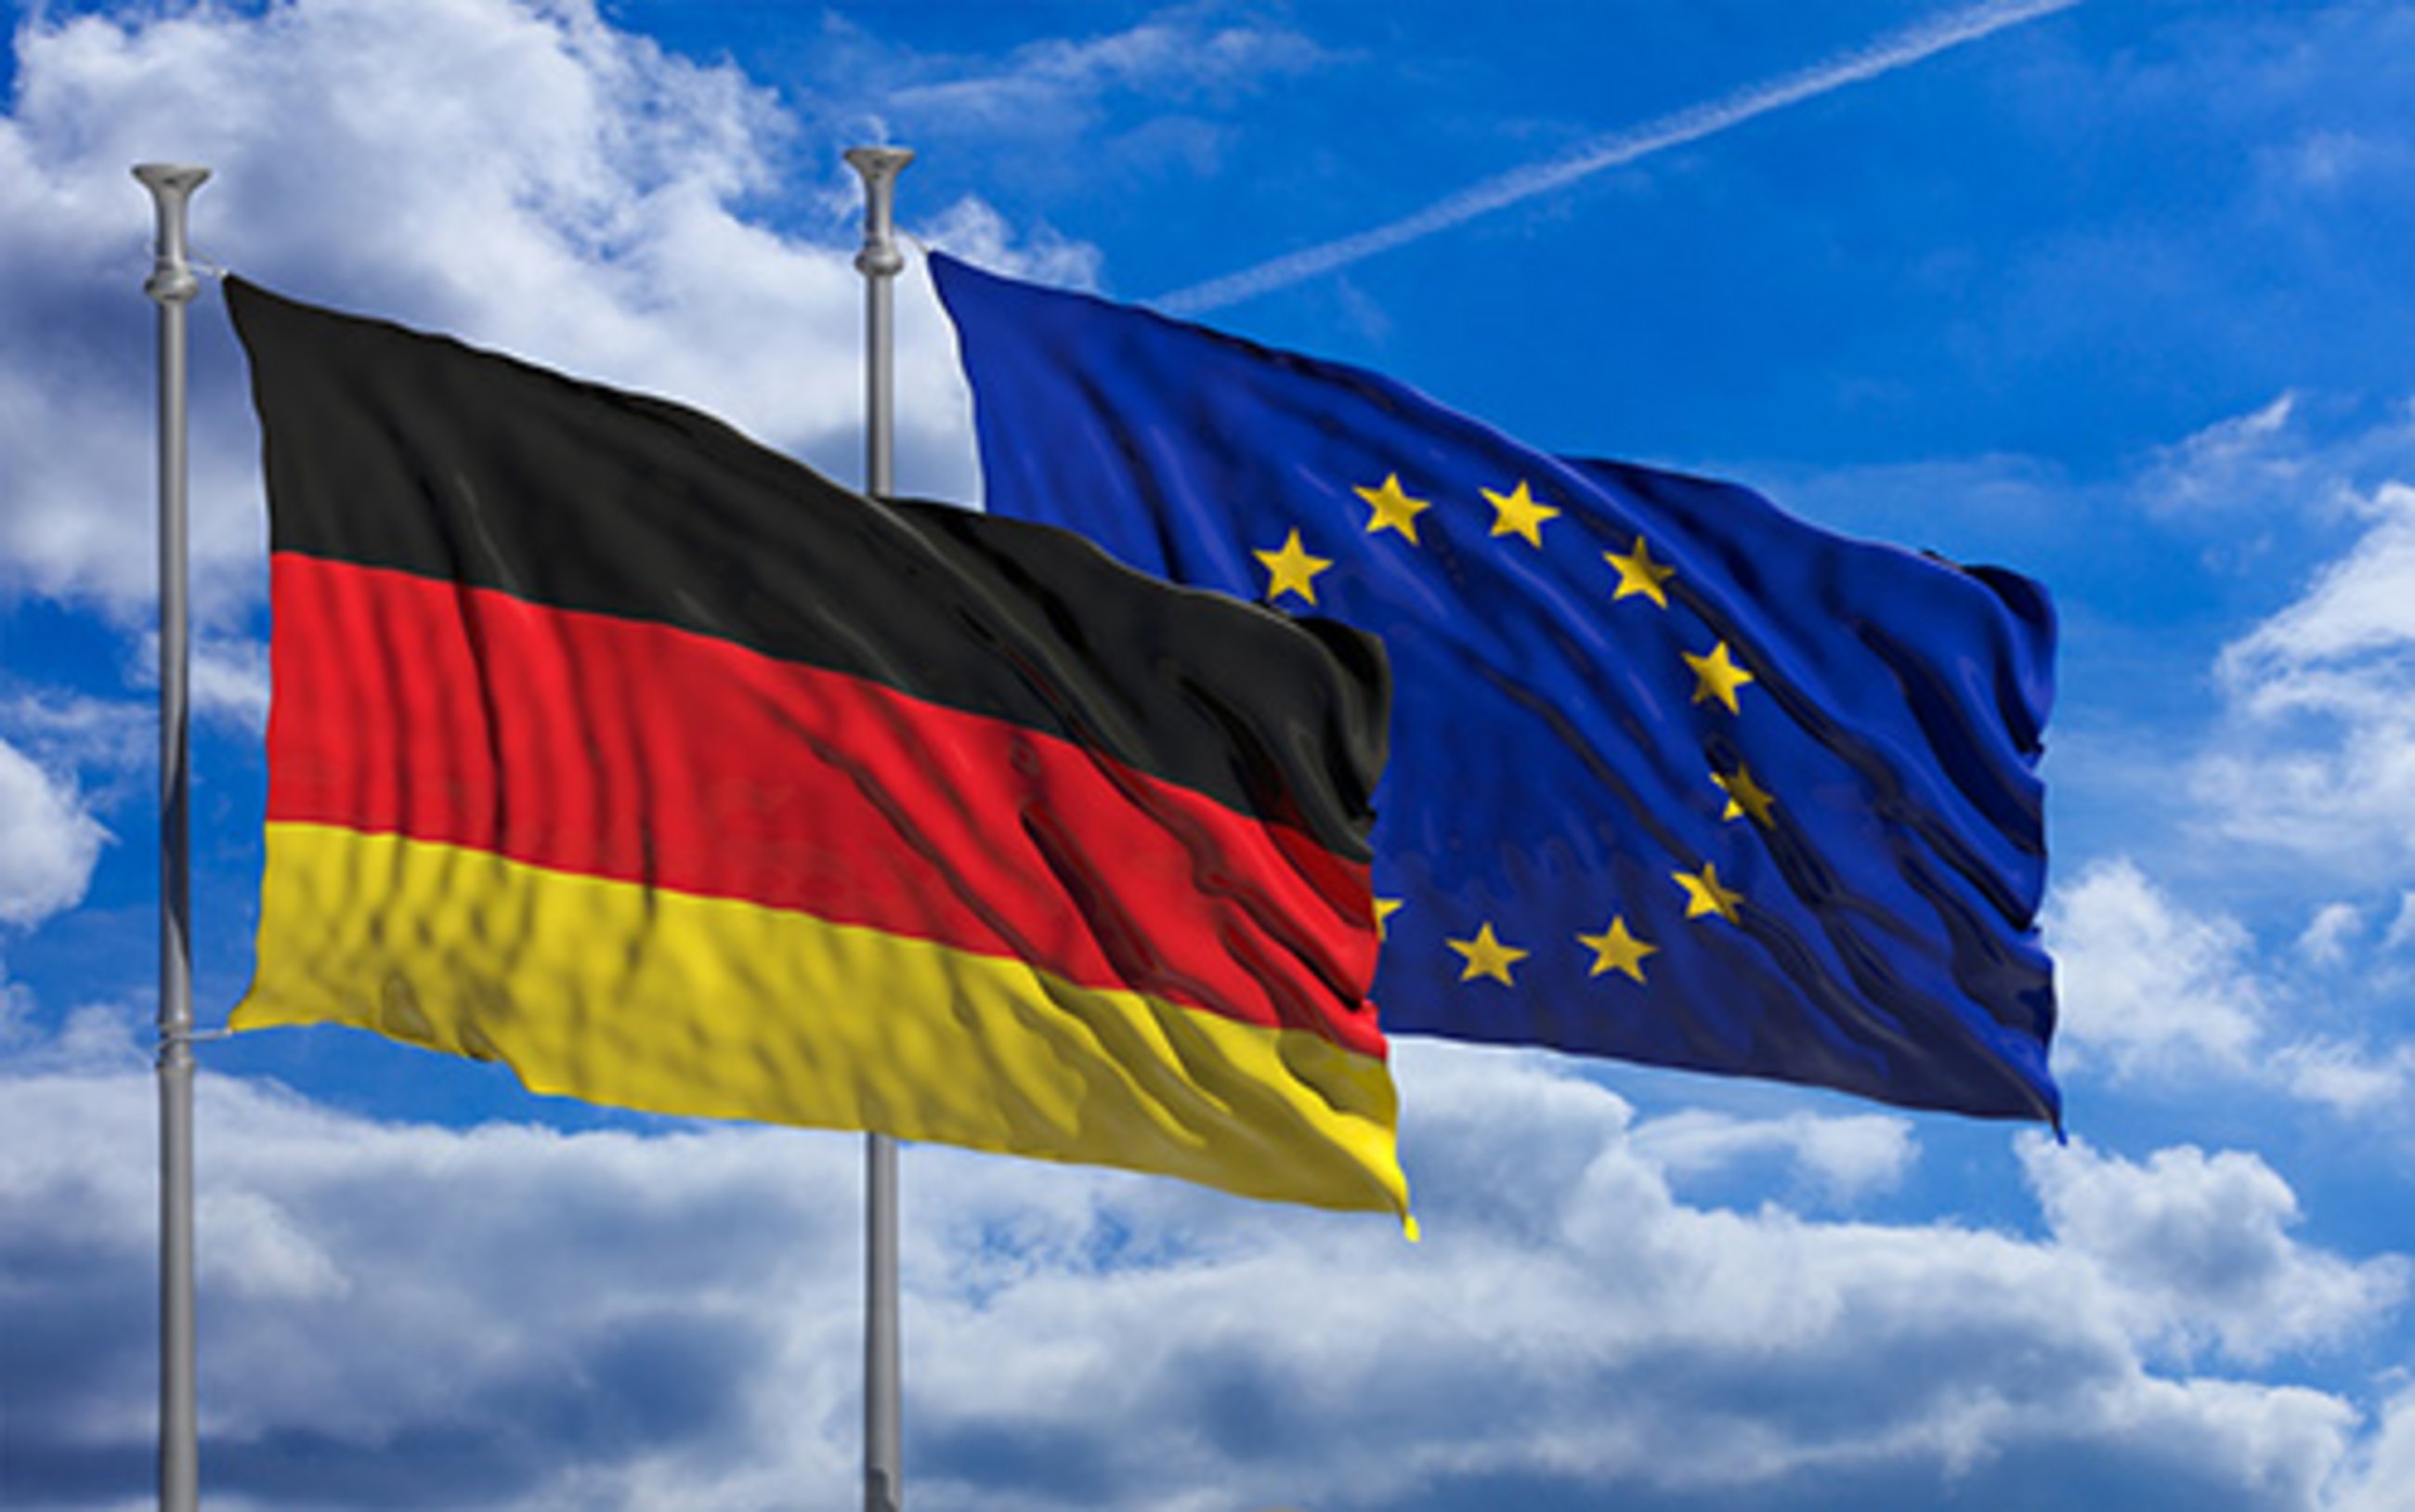 Le programme de la présidence allemande est-il pertinent ? cepBriefing France-Allemagne No. 8